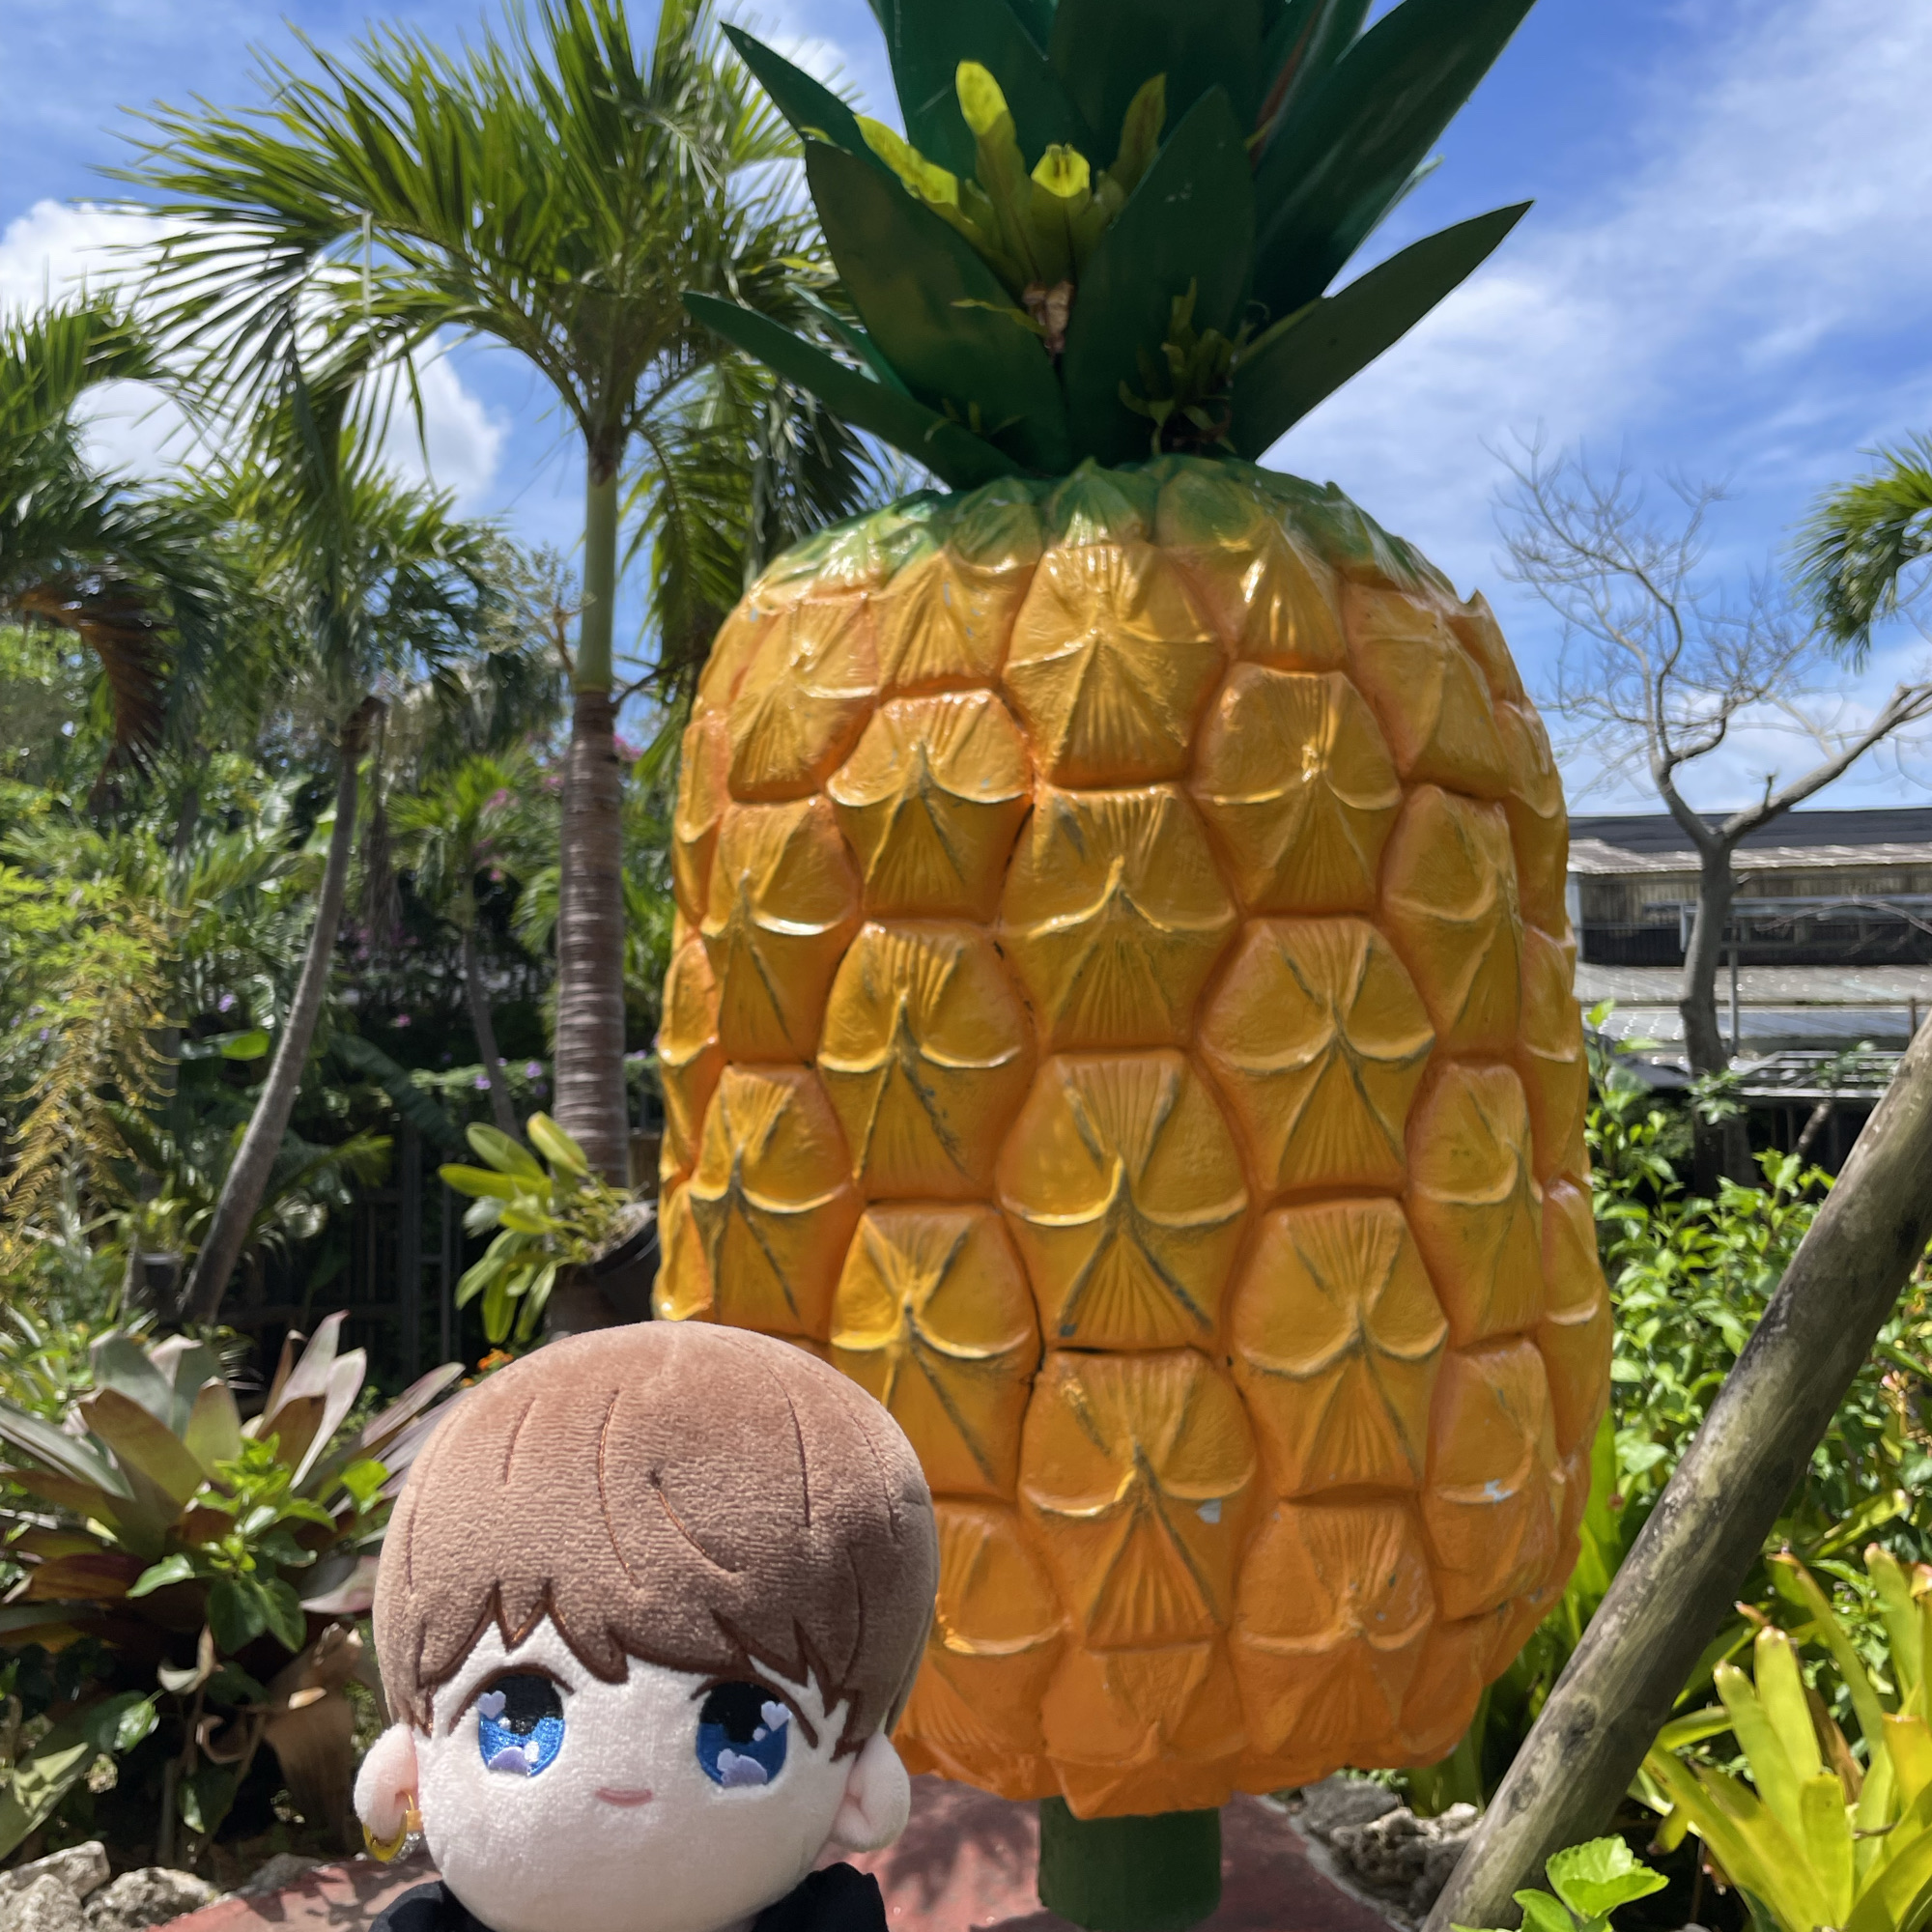 沖縄名護パイナップル園は、パイナップルをテーマに、超かわいい